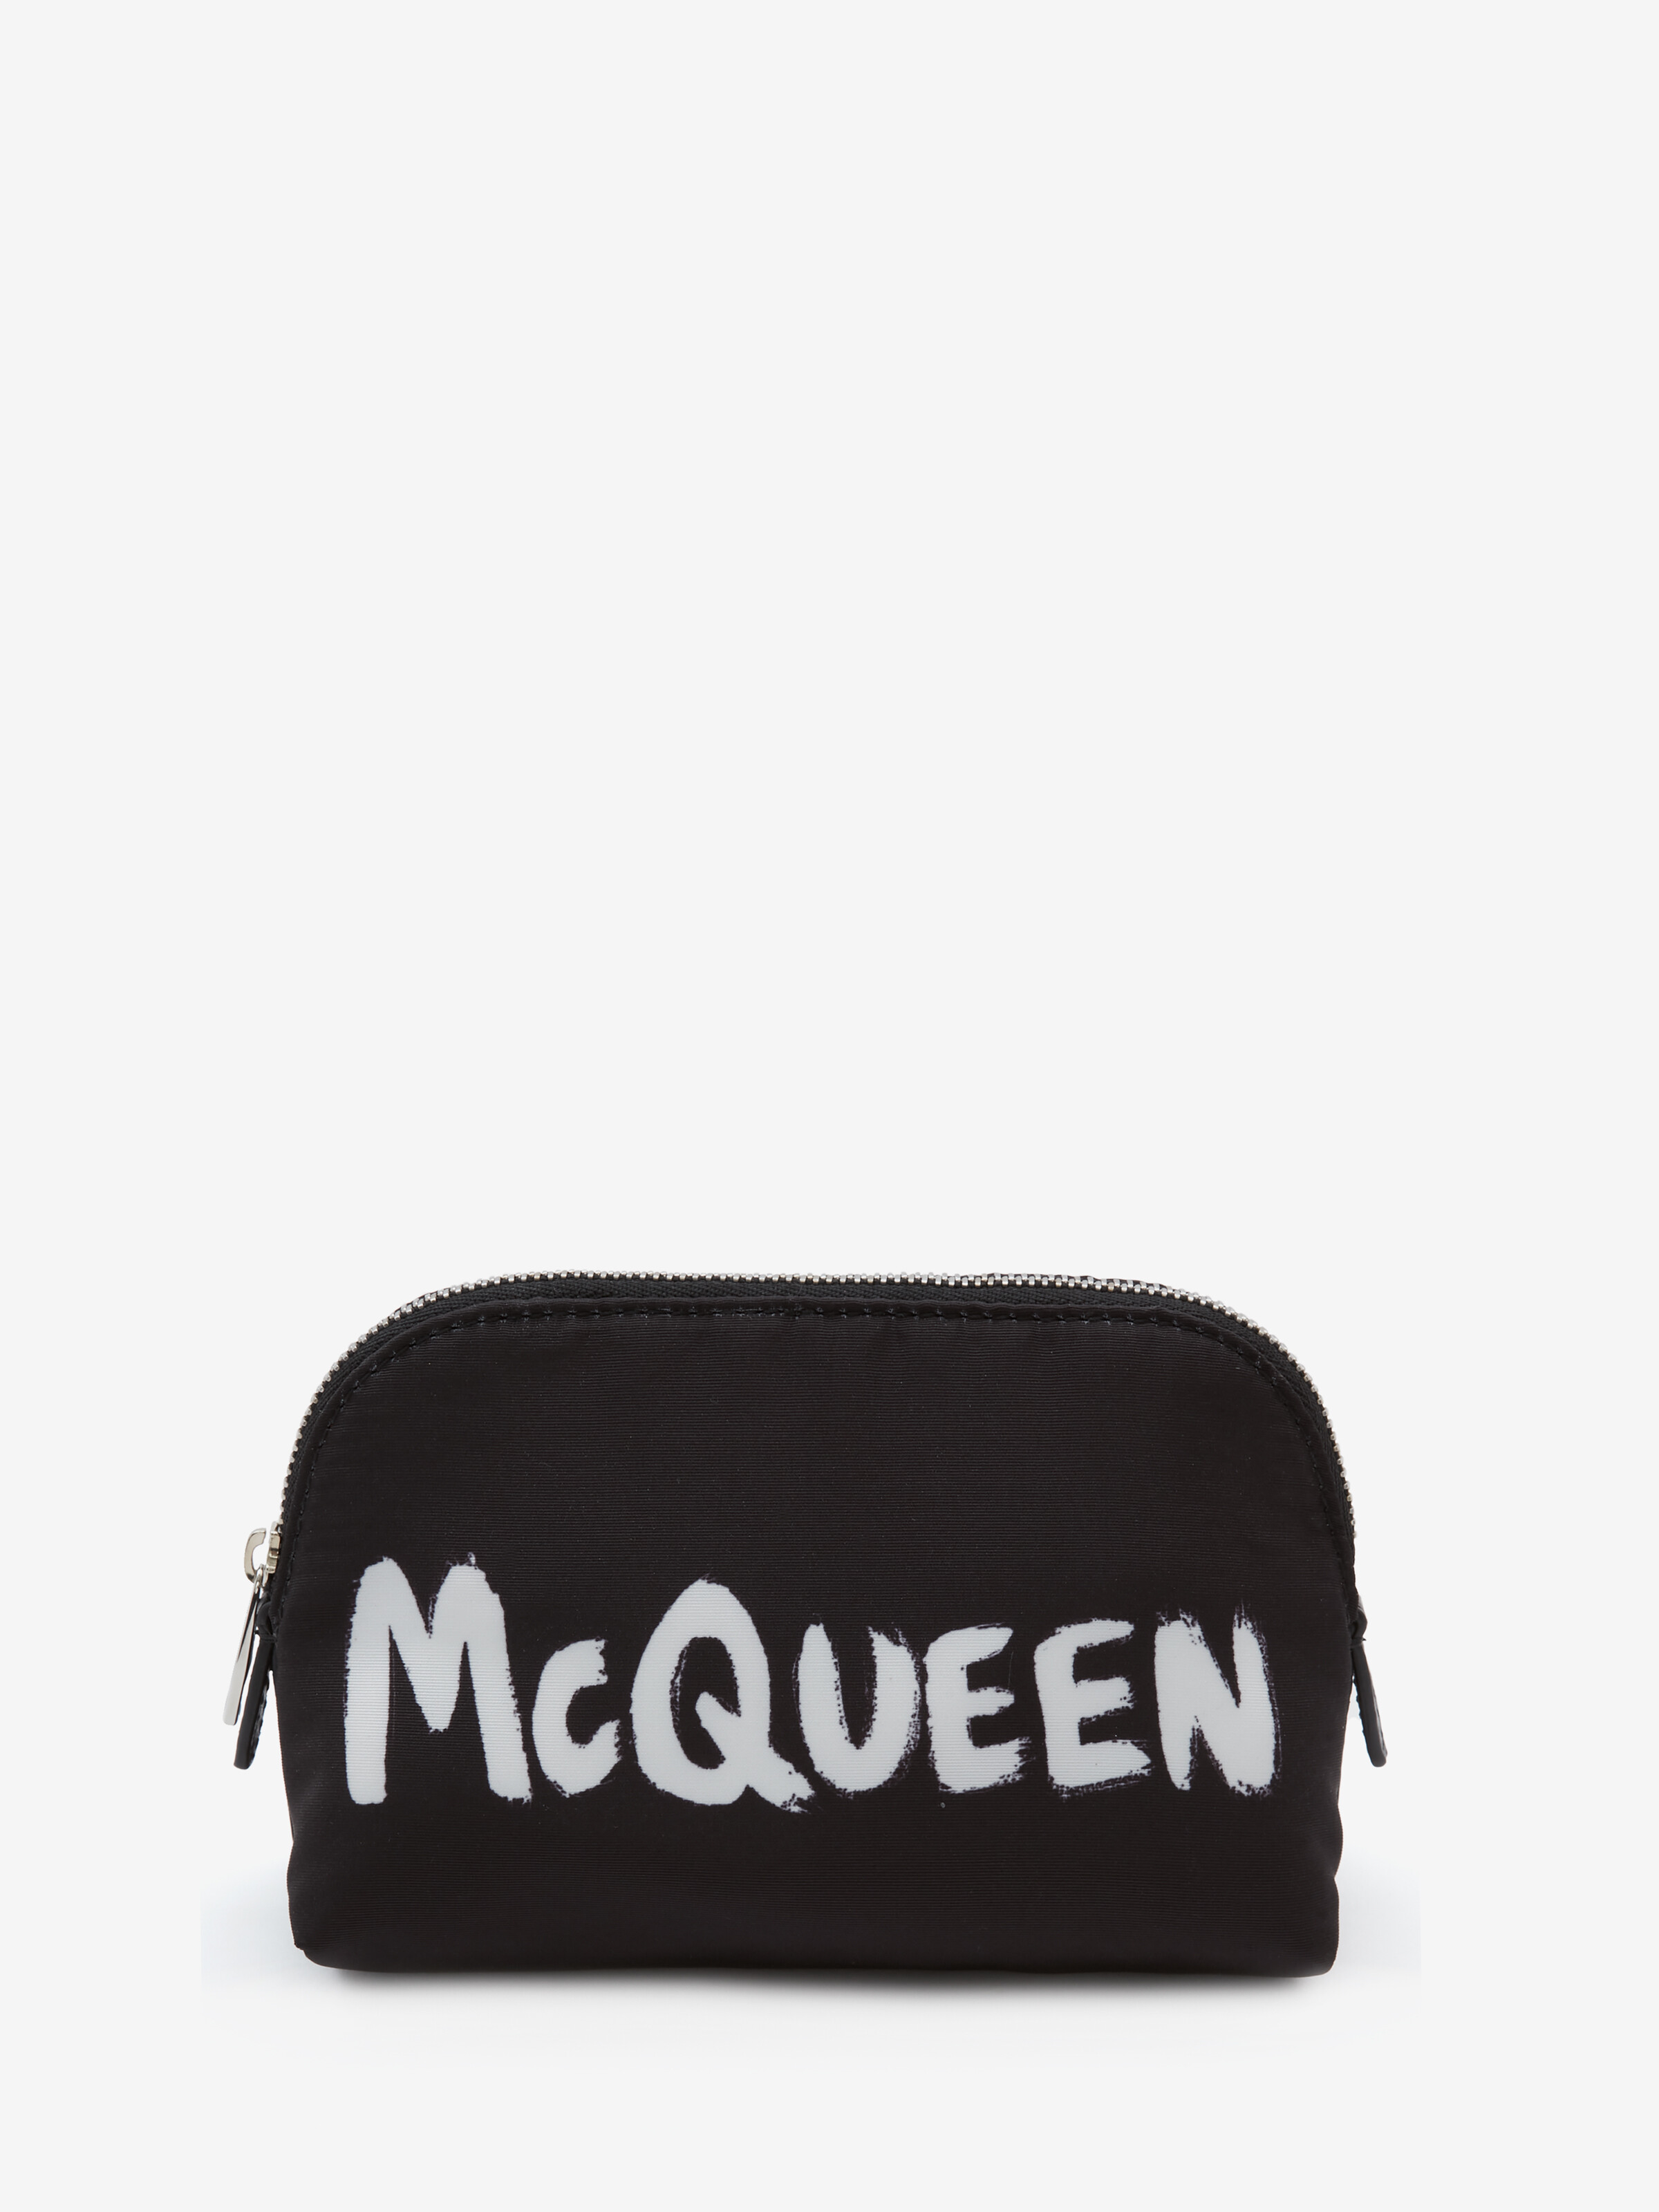 McQueen Graffiti Medium Zip Pouch